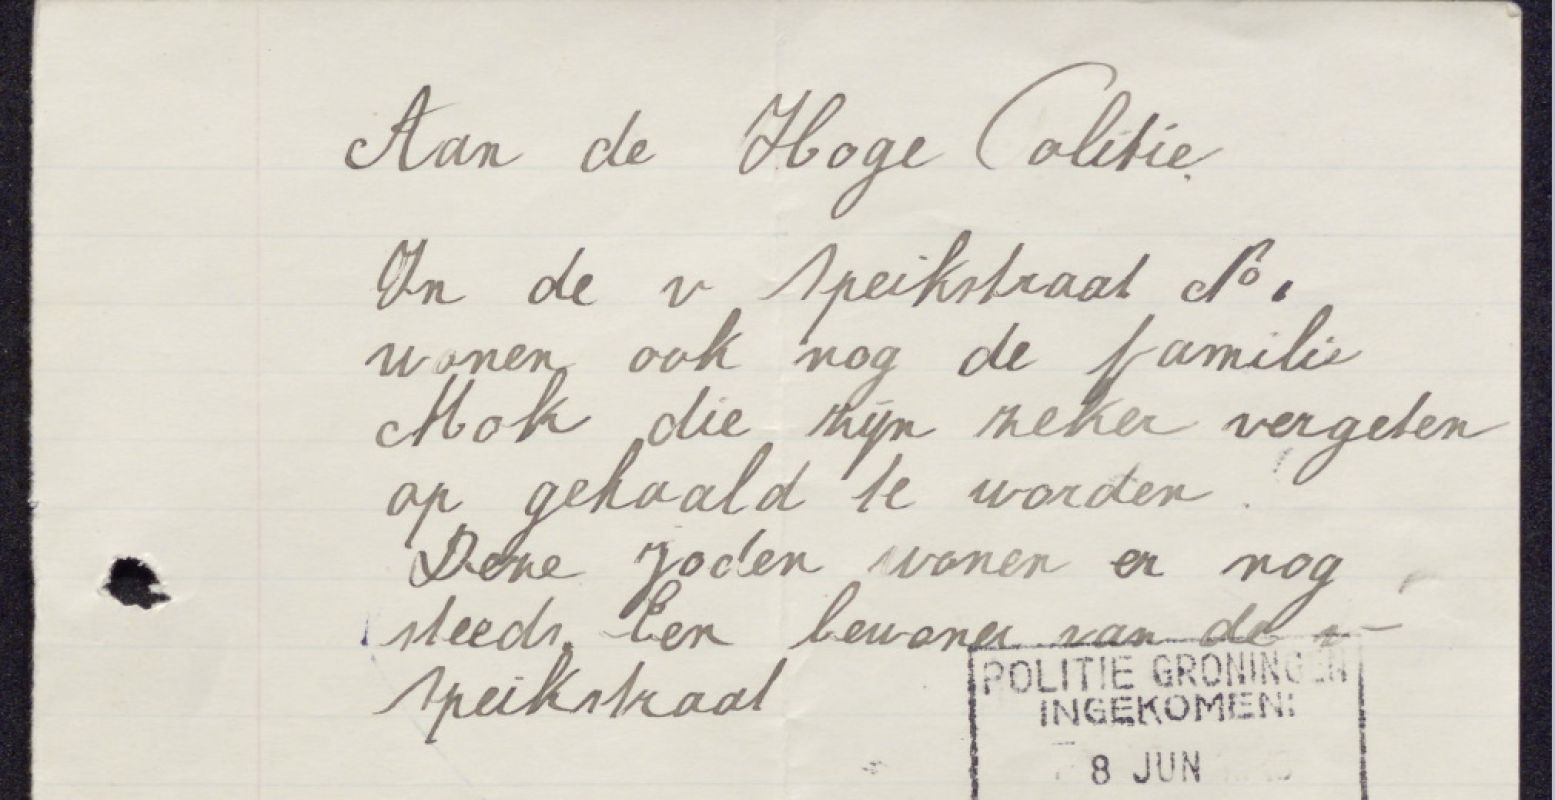 Verradersbrief uit de Van Speijkstraat, Collectie Groninger Archieven. Foto: Groninger Archieven.